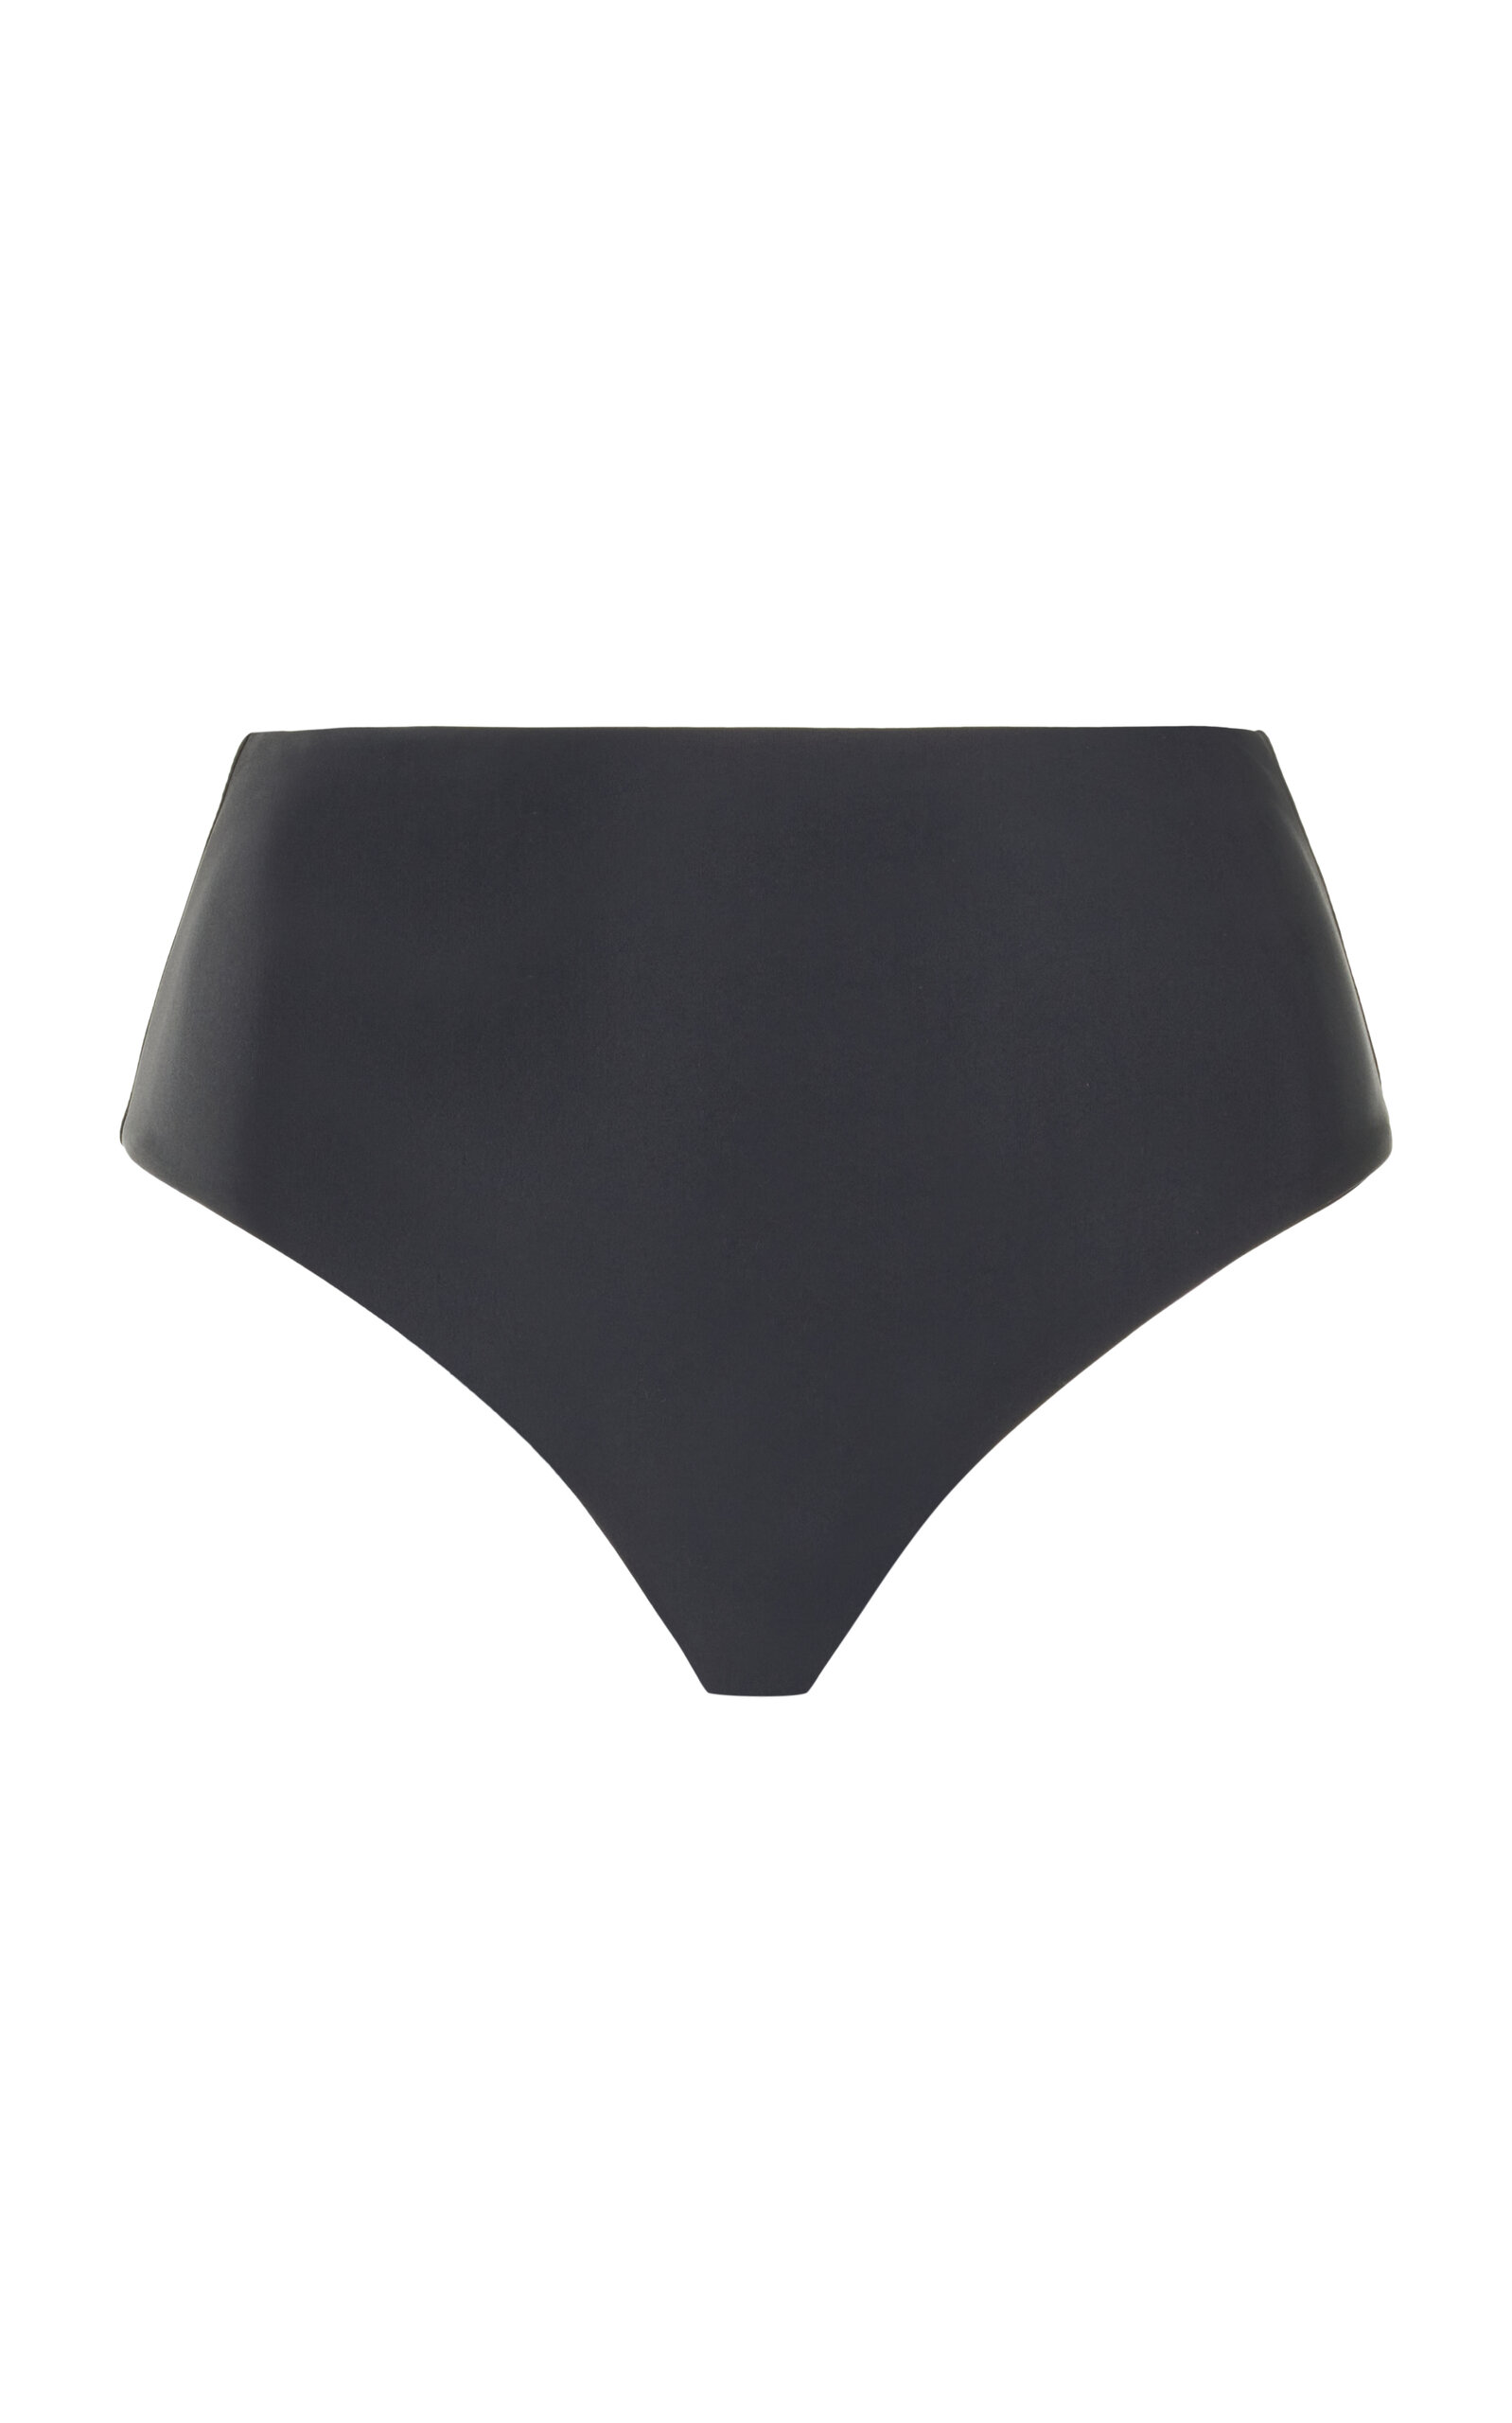 JADE SWIM - Bound High-Waisted Bikini Bottom - Black - L - Moda Operandi